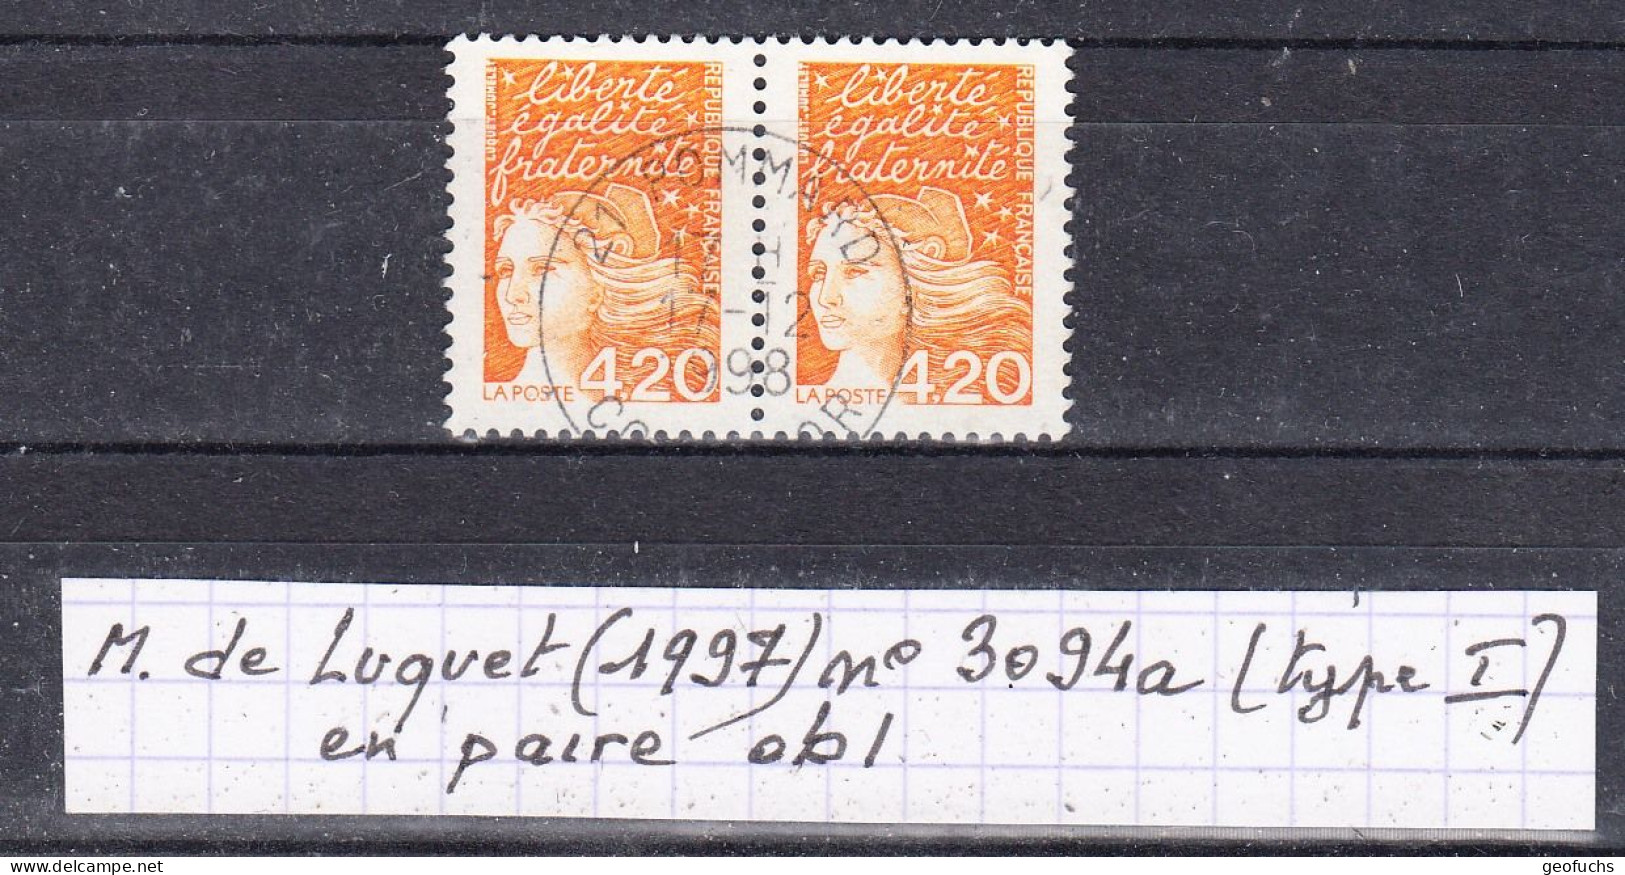 France Marianne Du 14 Juillet (1997)  Variéré Y/T Paire 3094a (type I Oreille Intacte) Oblitérés - 1997-2004 Marianne Of July 14th